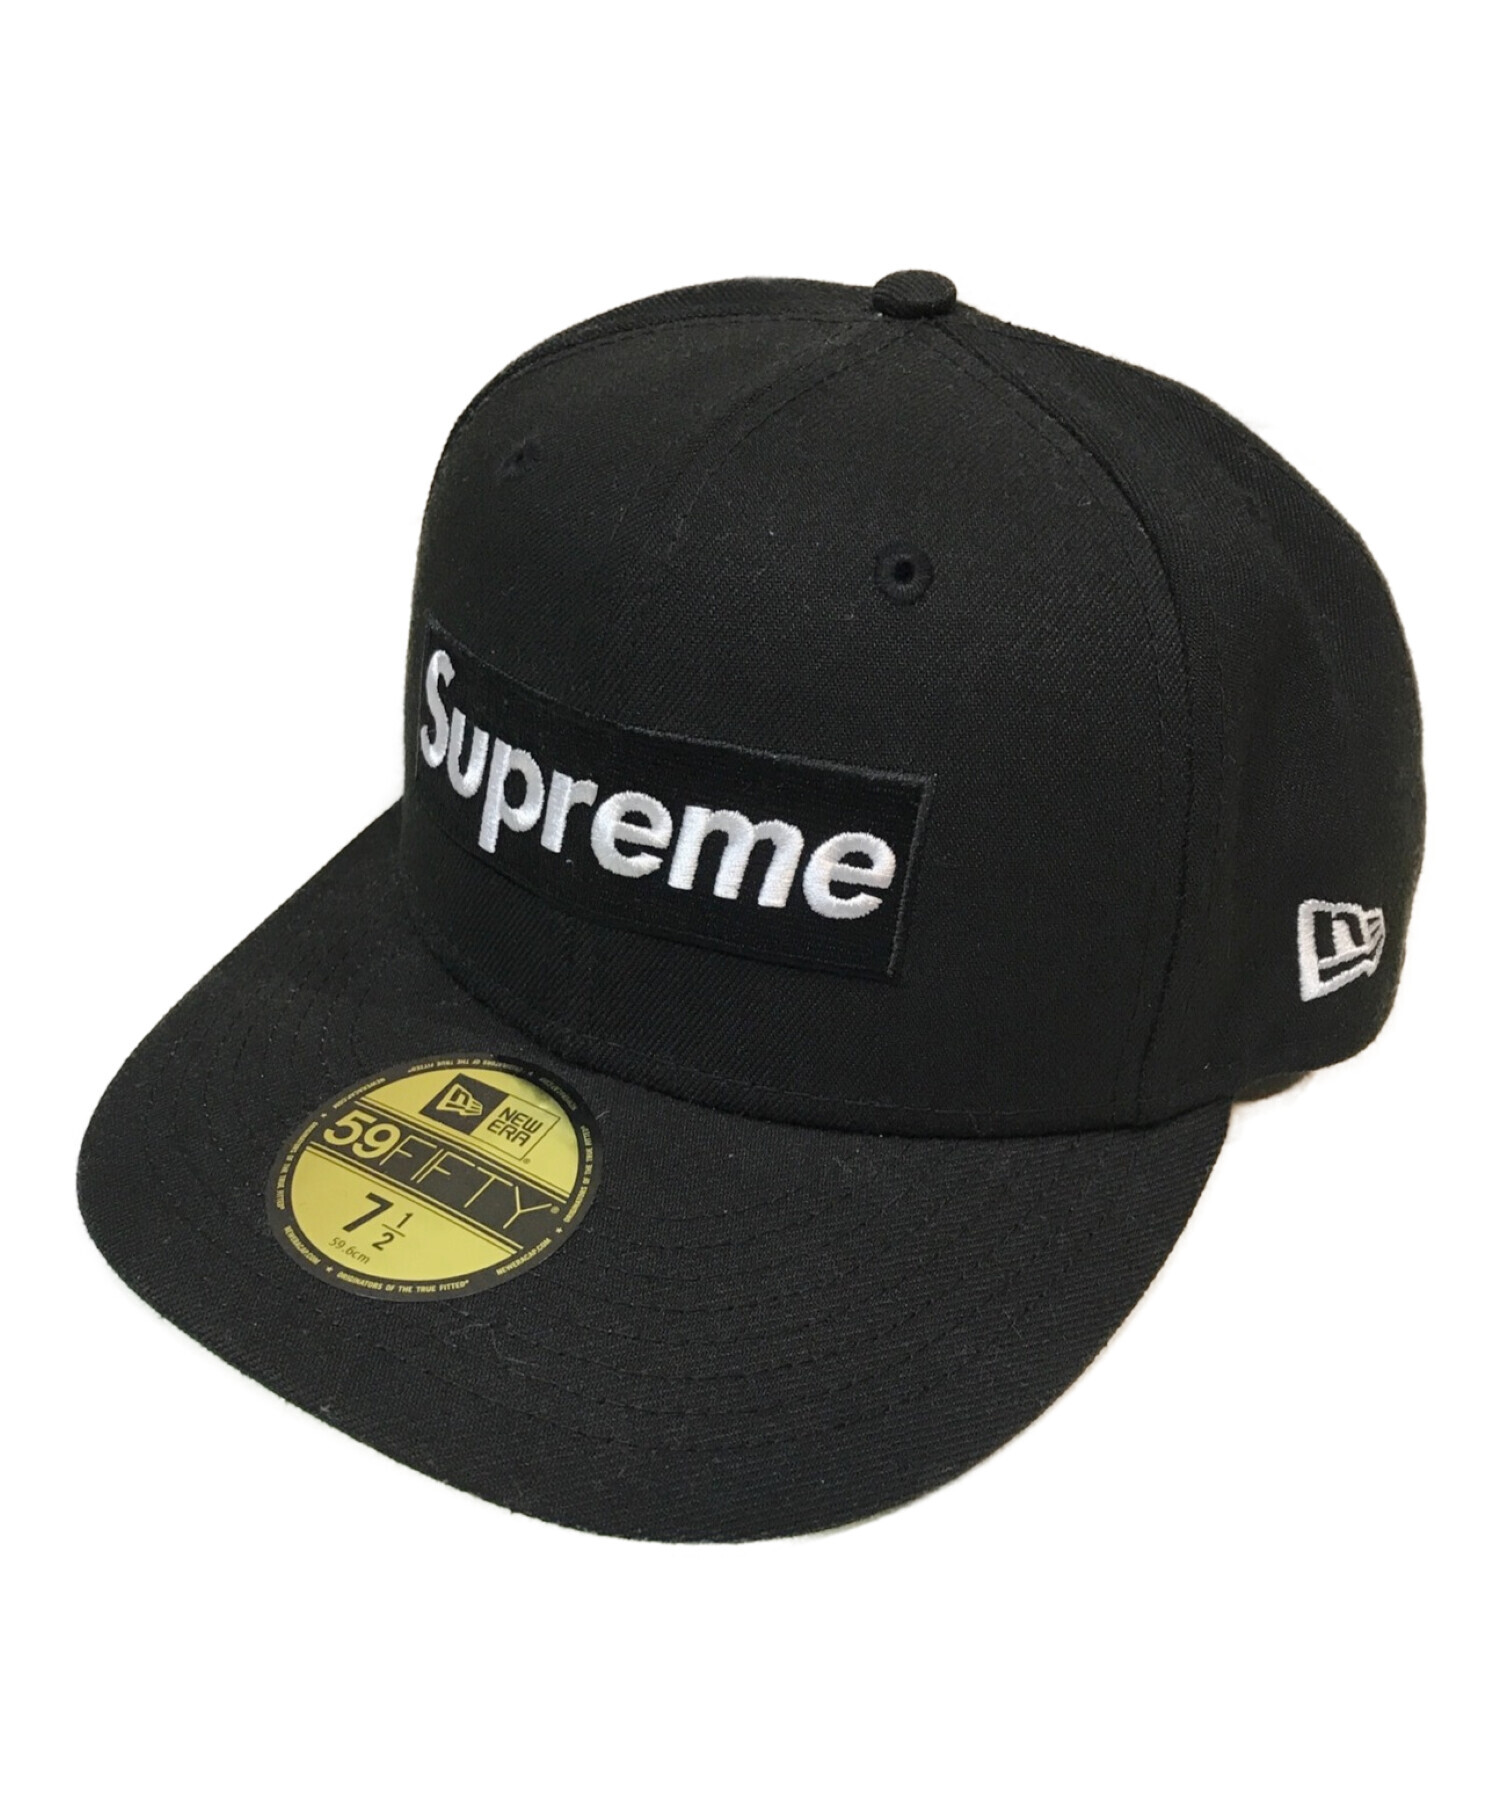 Supreme New Era Box logo 7 1/2 Black